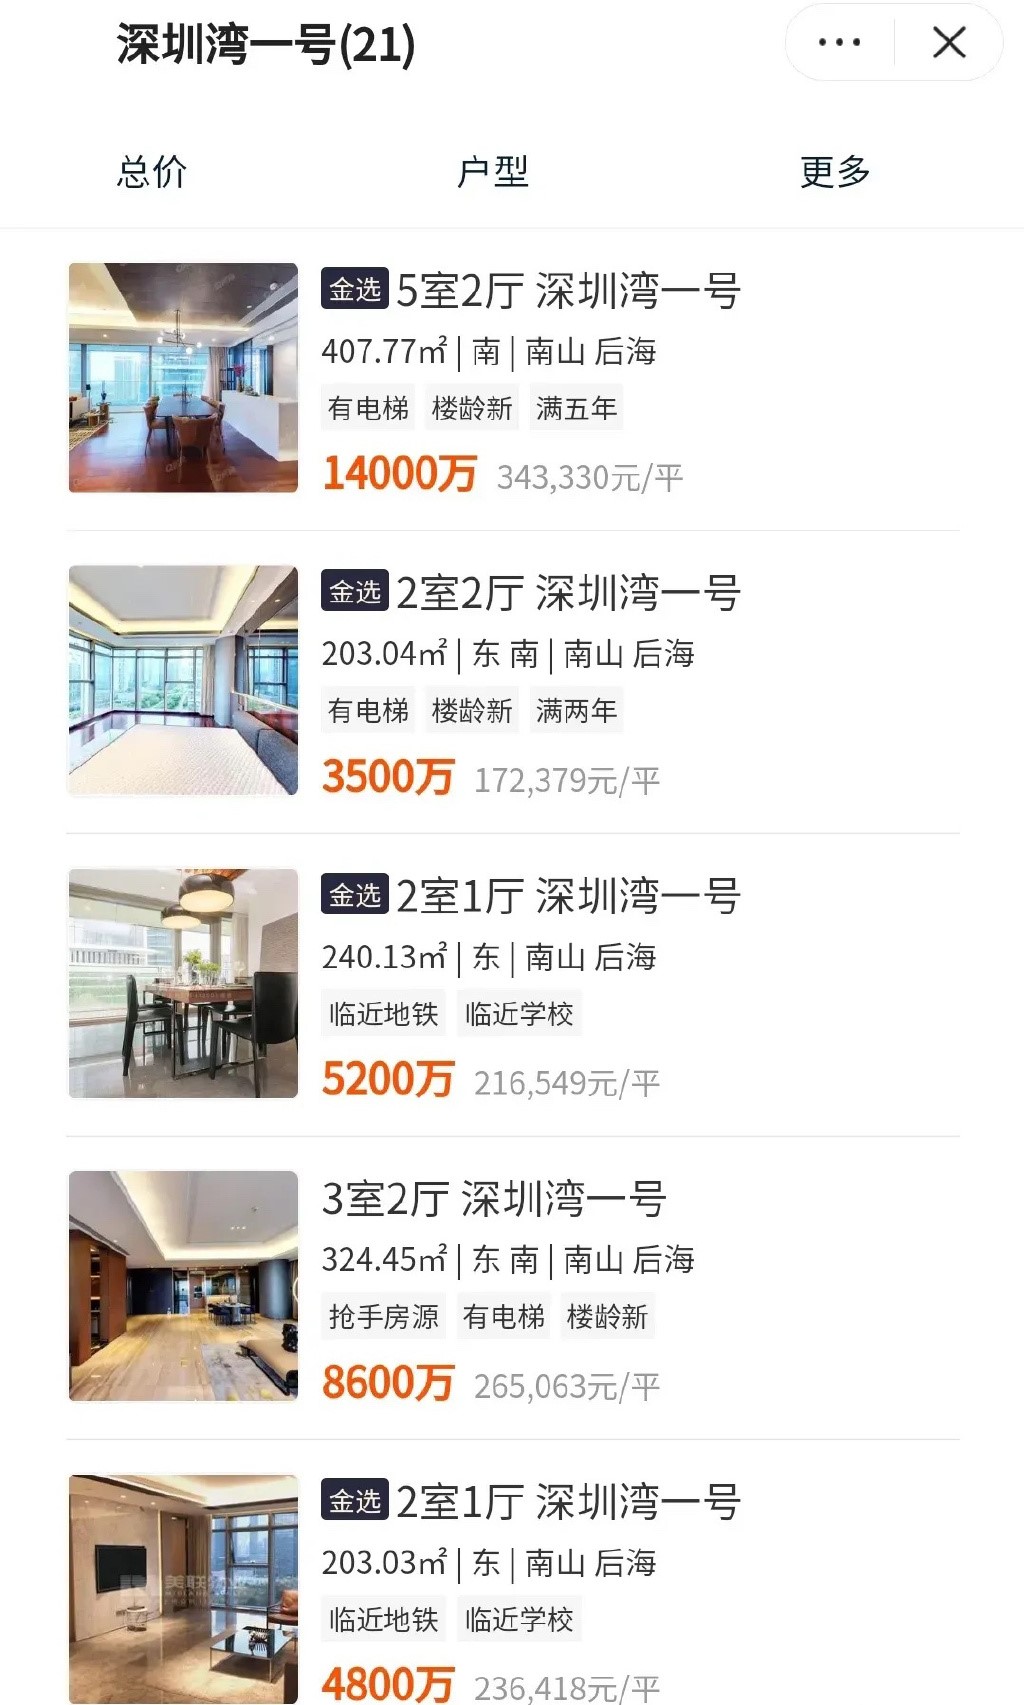 該豪宅小戶型2室2廳售價為3,500萬人民幣（約3900萬港幣），大戶型5室2廳售價為1.4億人民幣（約1.6億港幣）。